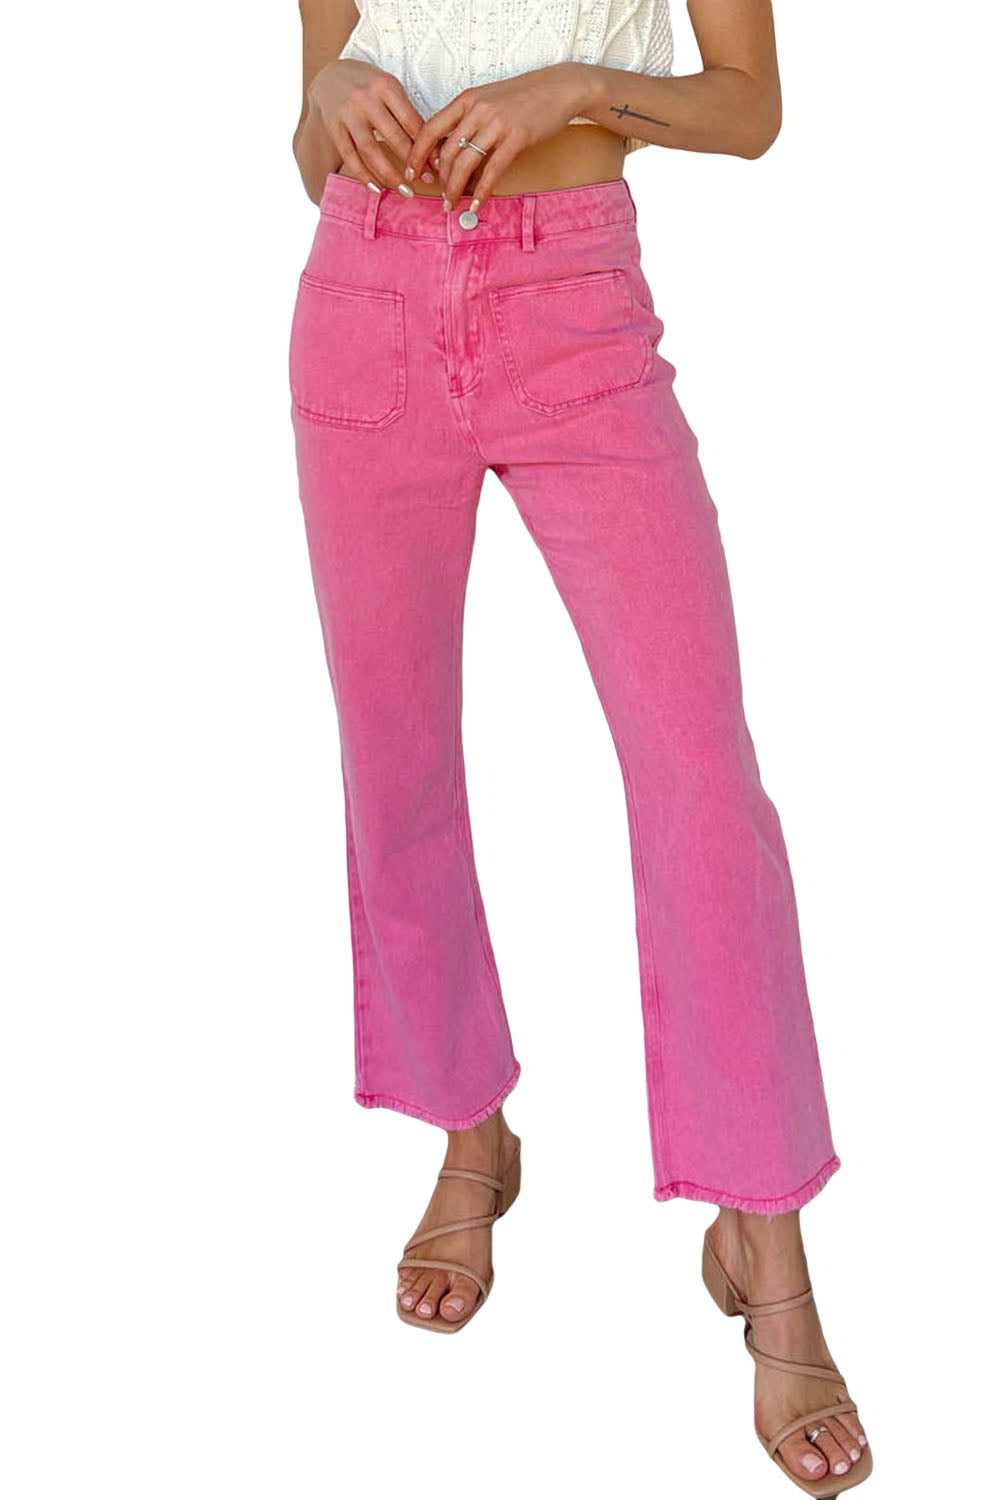 Rosa knöchellange Jeans mit ausgestelltem Bein und ungesäumtem Saum